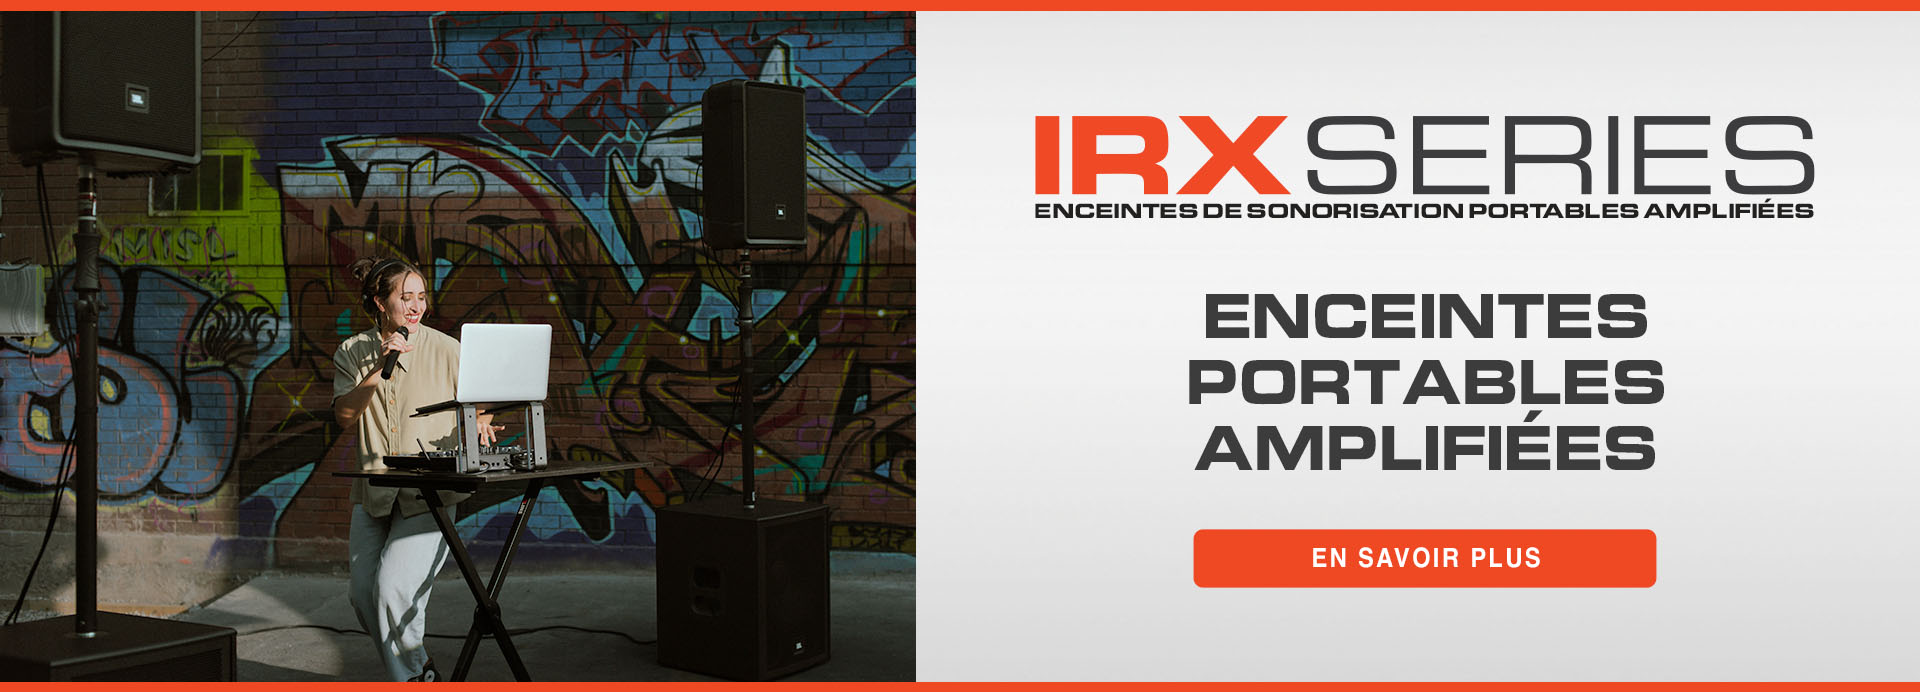 IRX launch - homepage